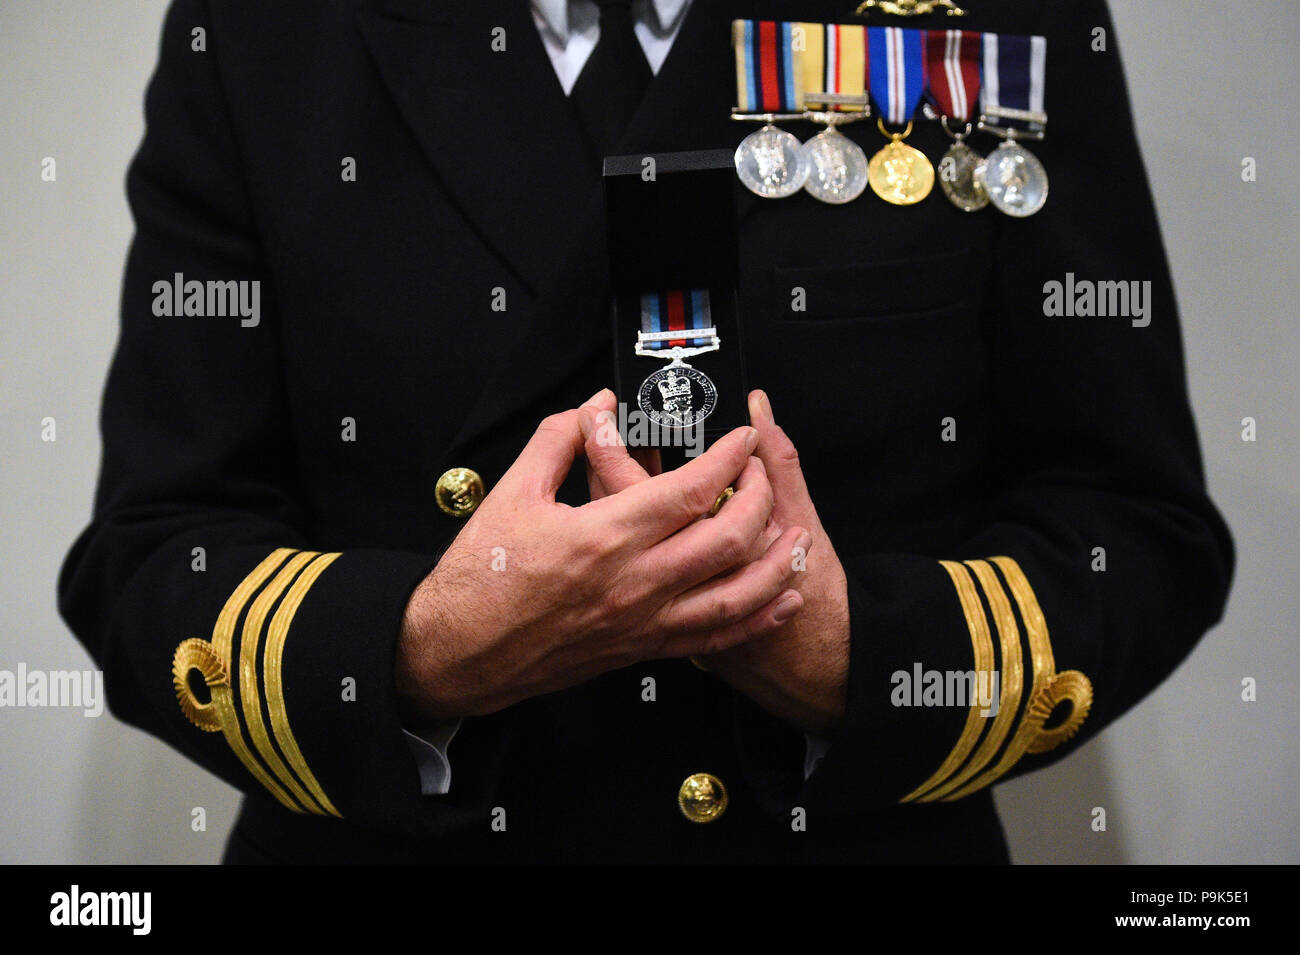 Ein Veteran hält seinen neuen Betrieb Shader Medaille, die ihm die Beteiligung an der Koalition Kampf gegen Daesh im Irak und in Syrien vorgelegt wurde, auf das Verteidigungsministerium in London. Stockfoto